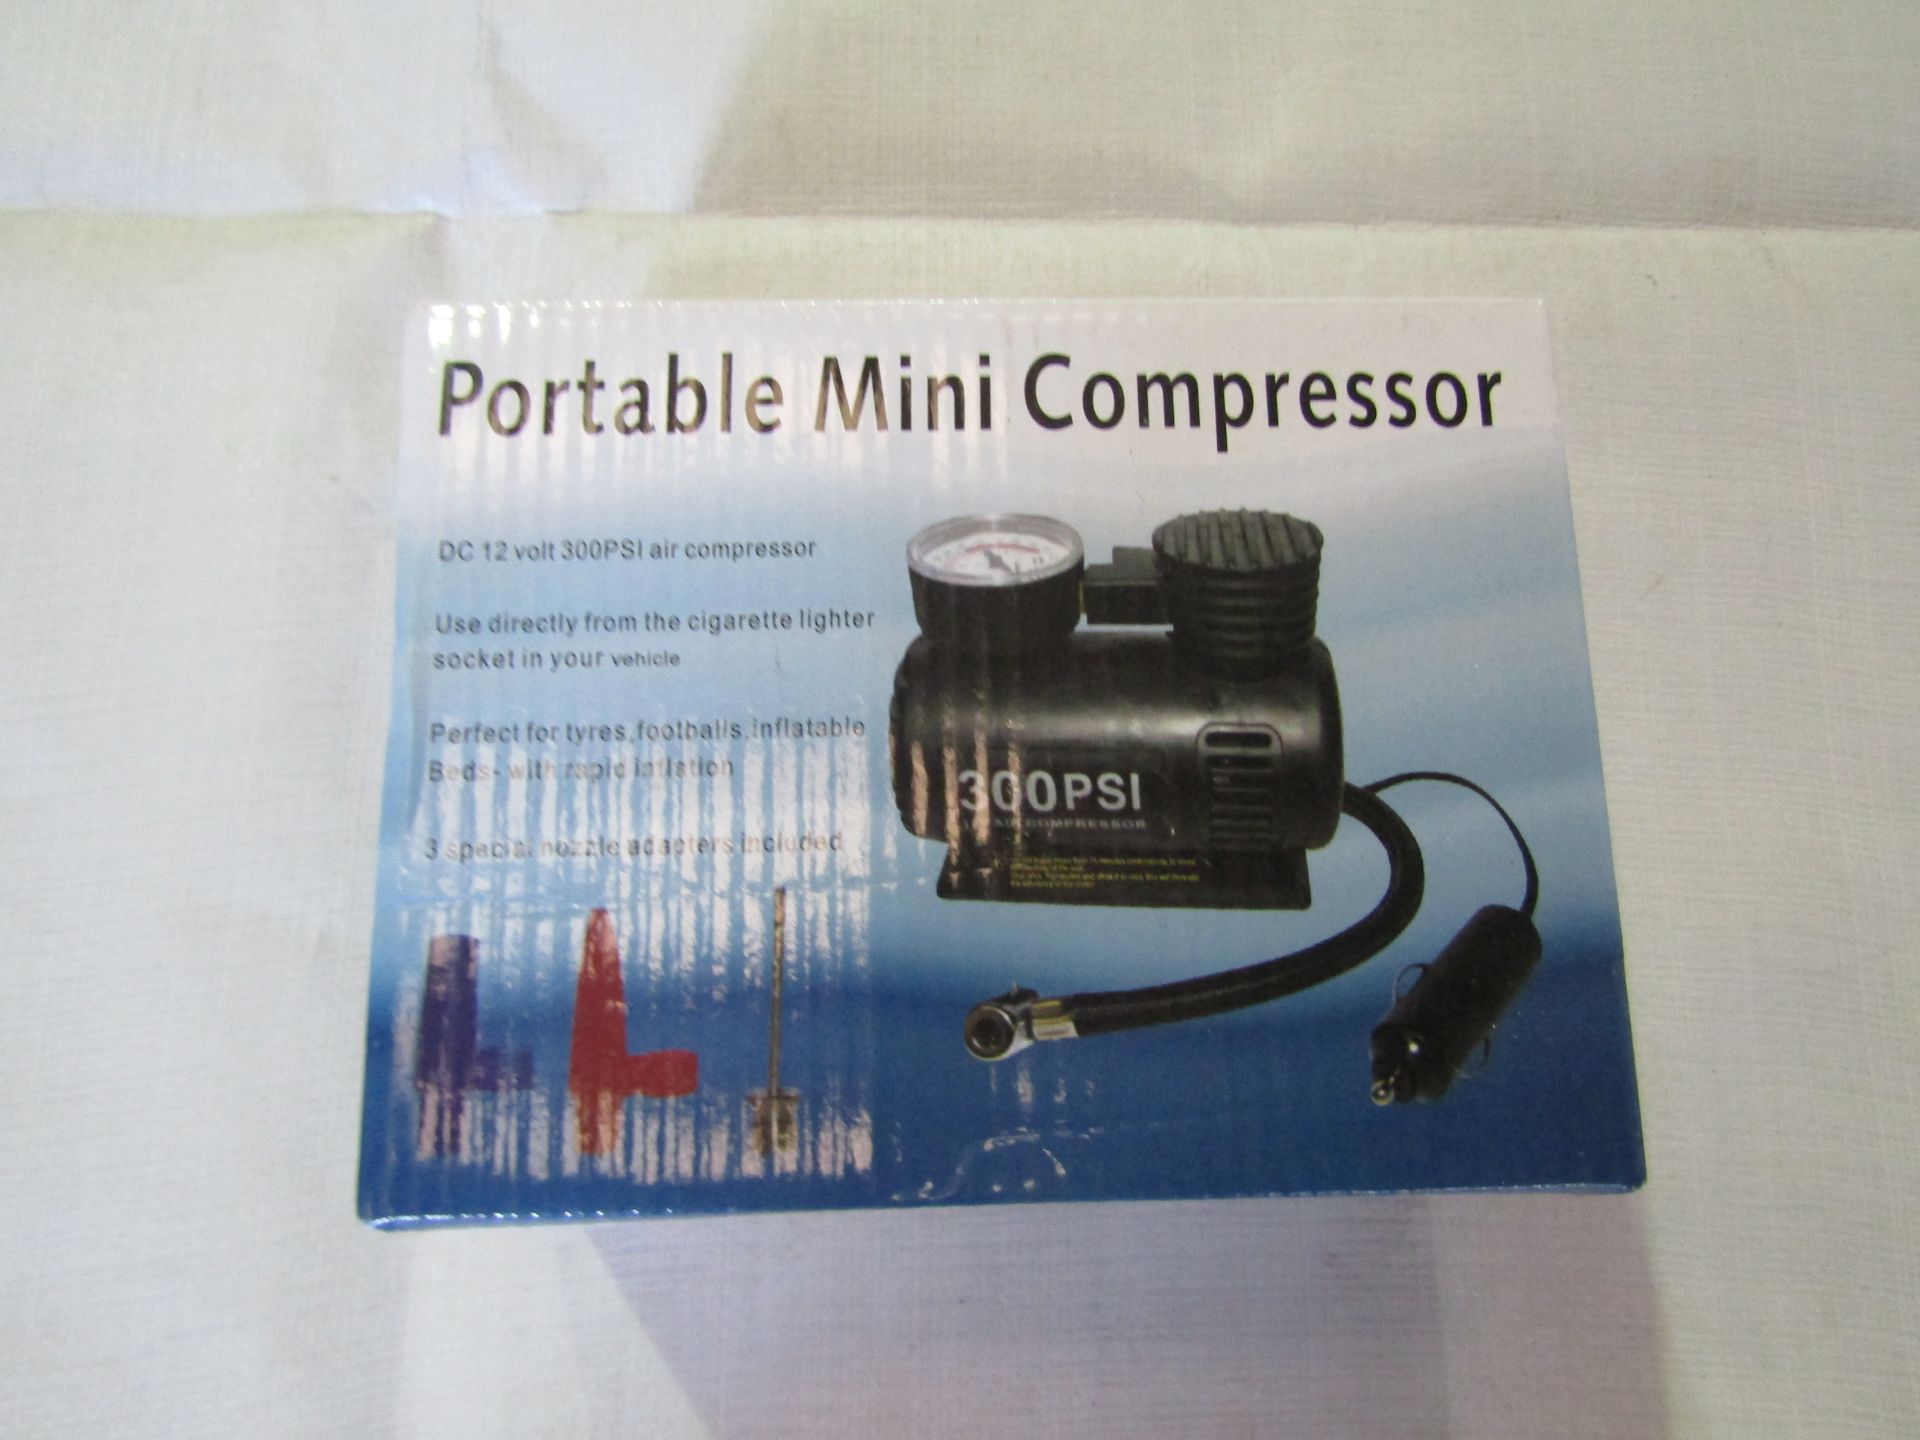 Portable DC 12V 300PSI Mini Compressor - Unchecked & Boxed.